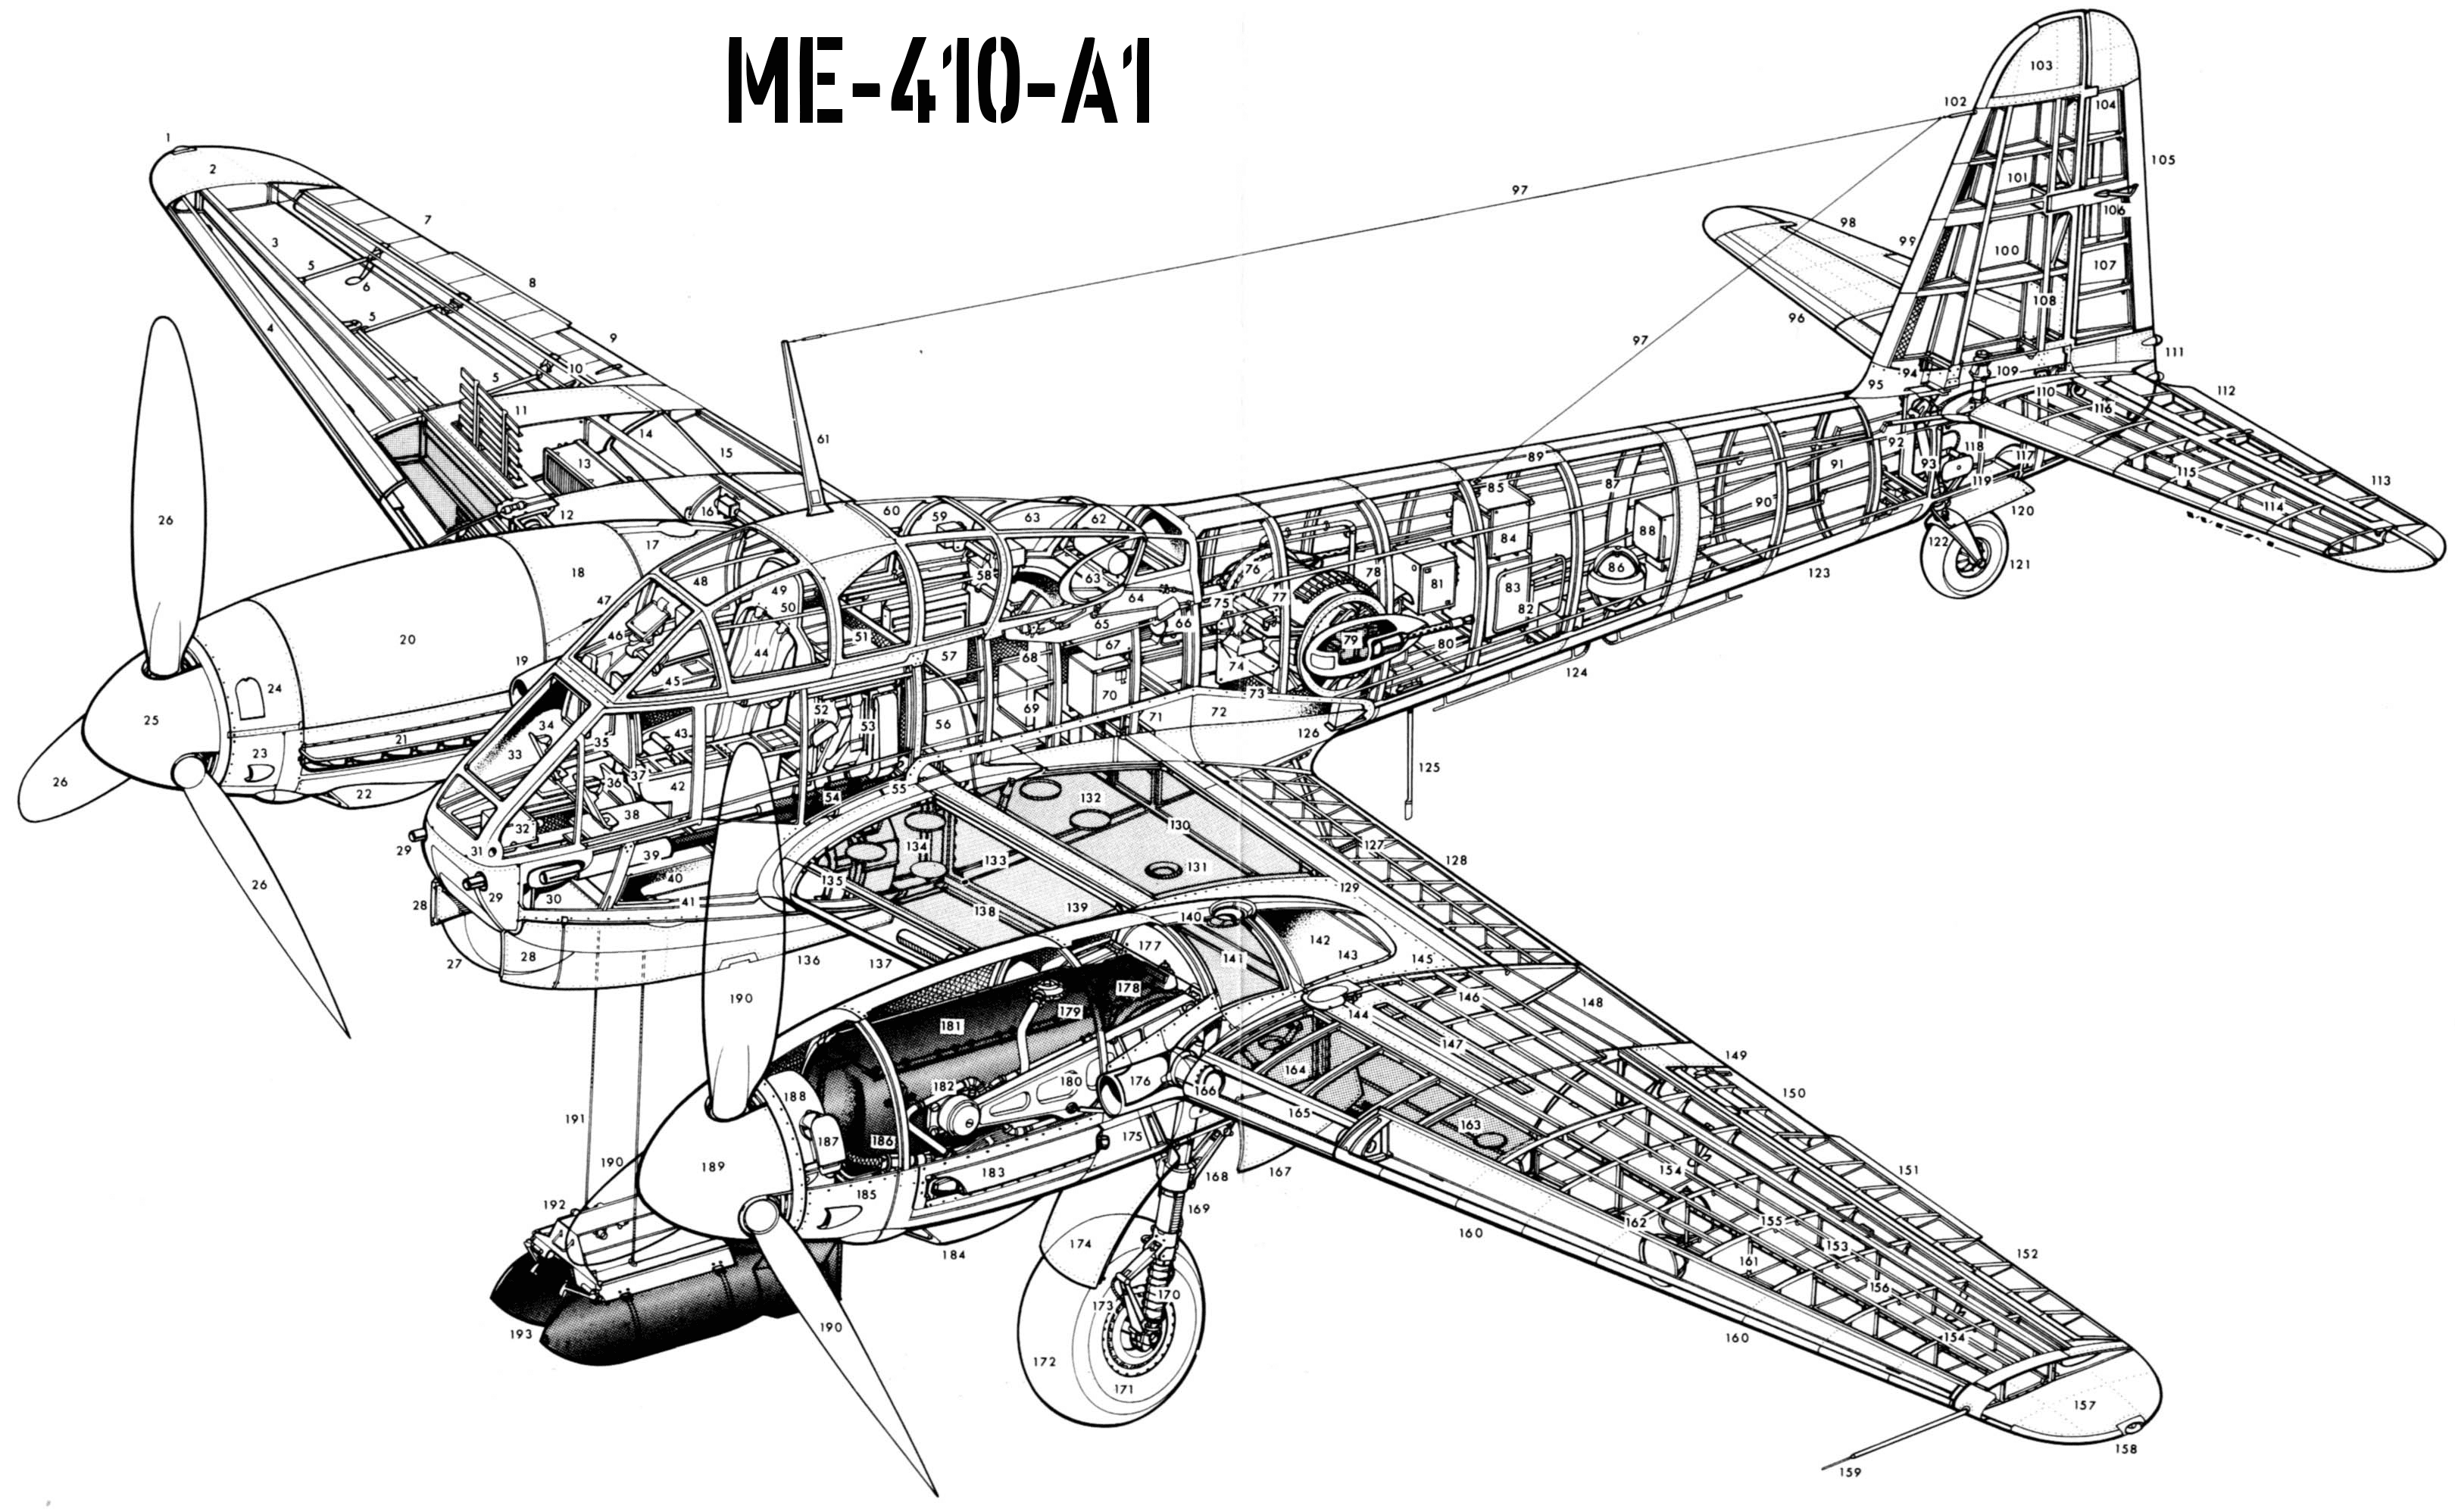 Me-410A1